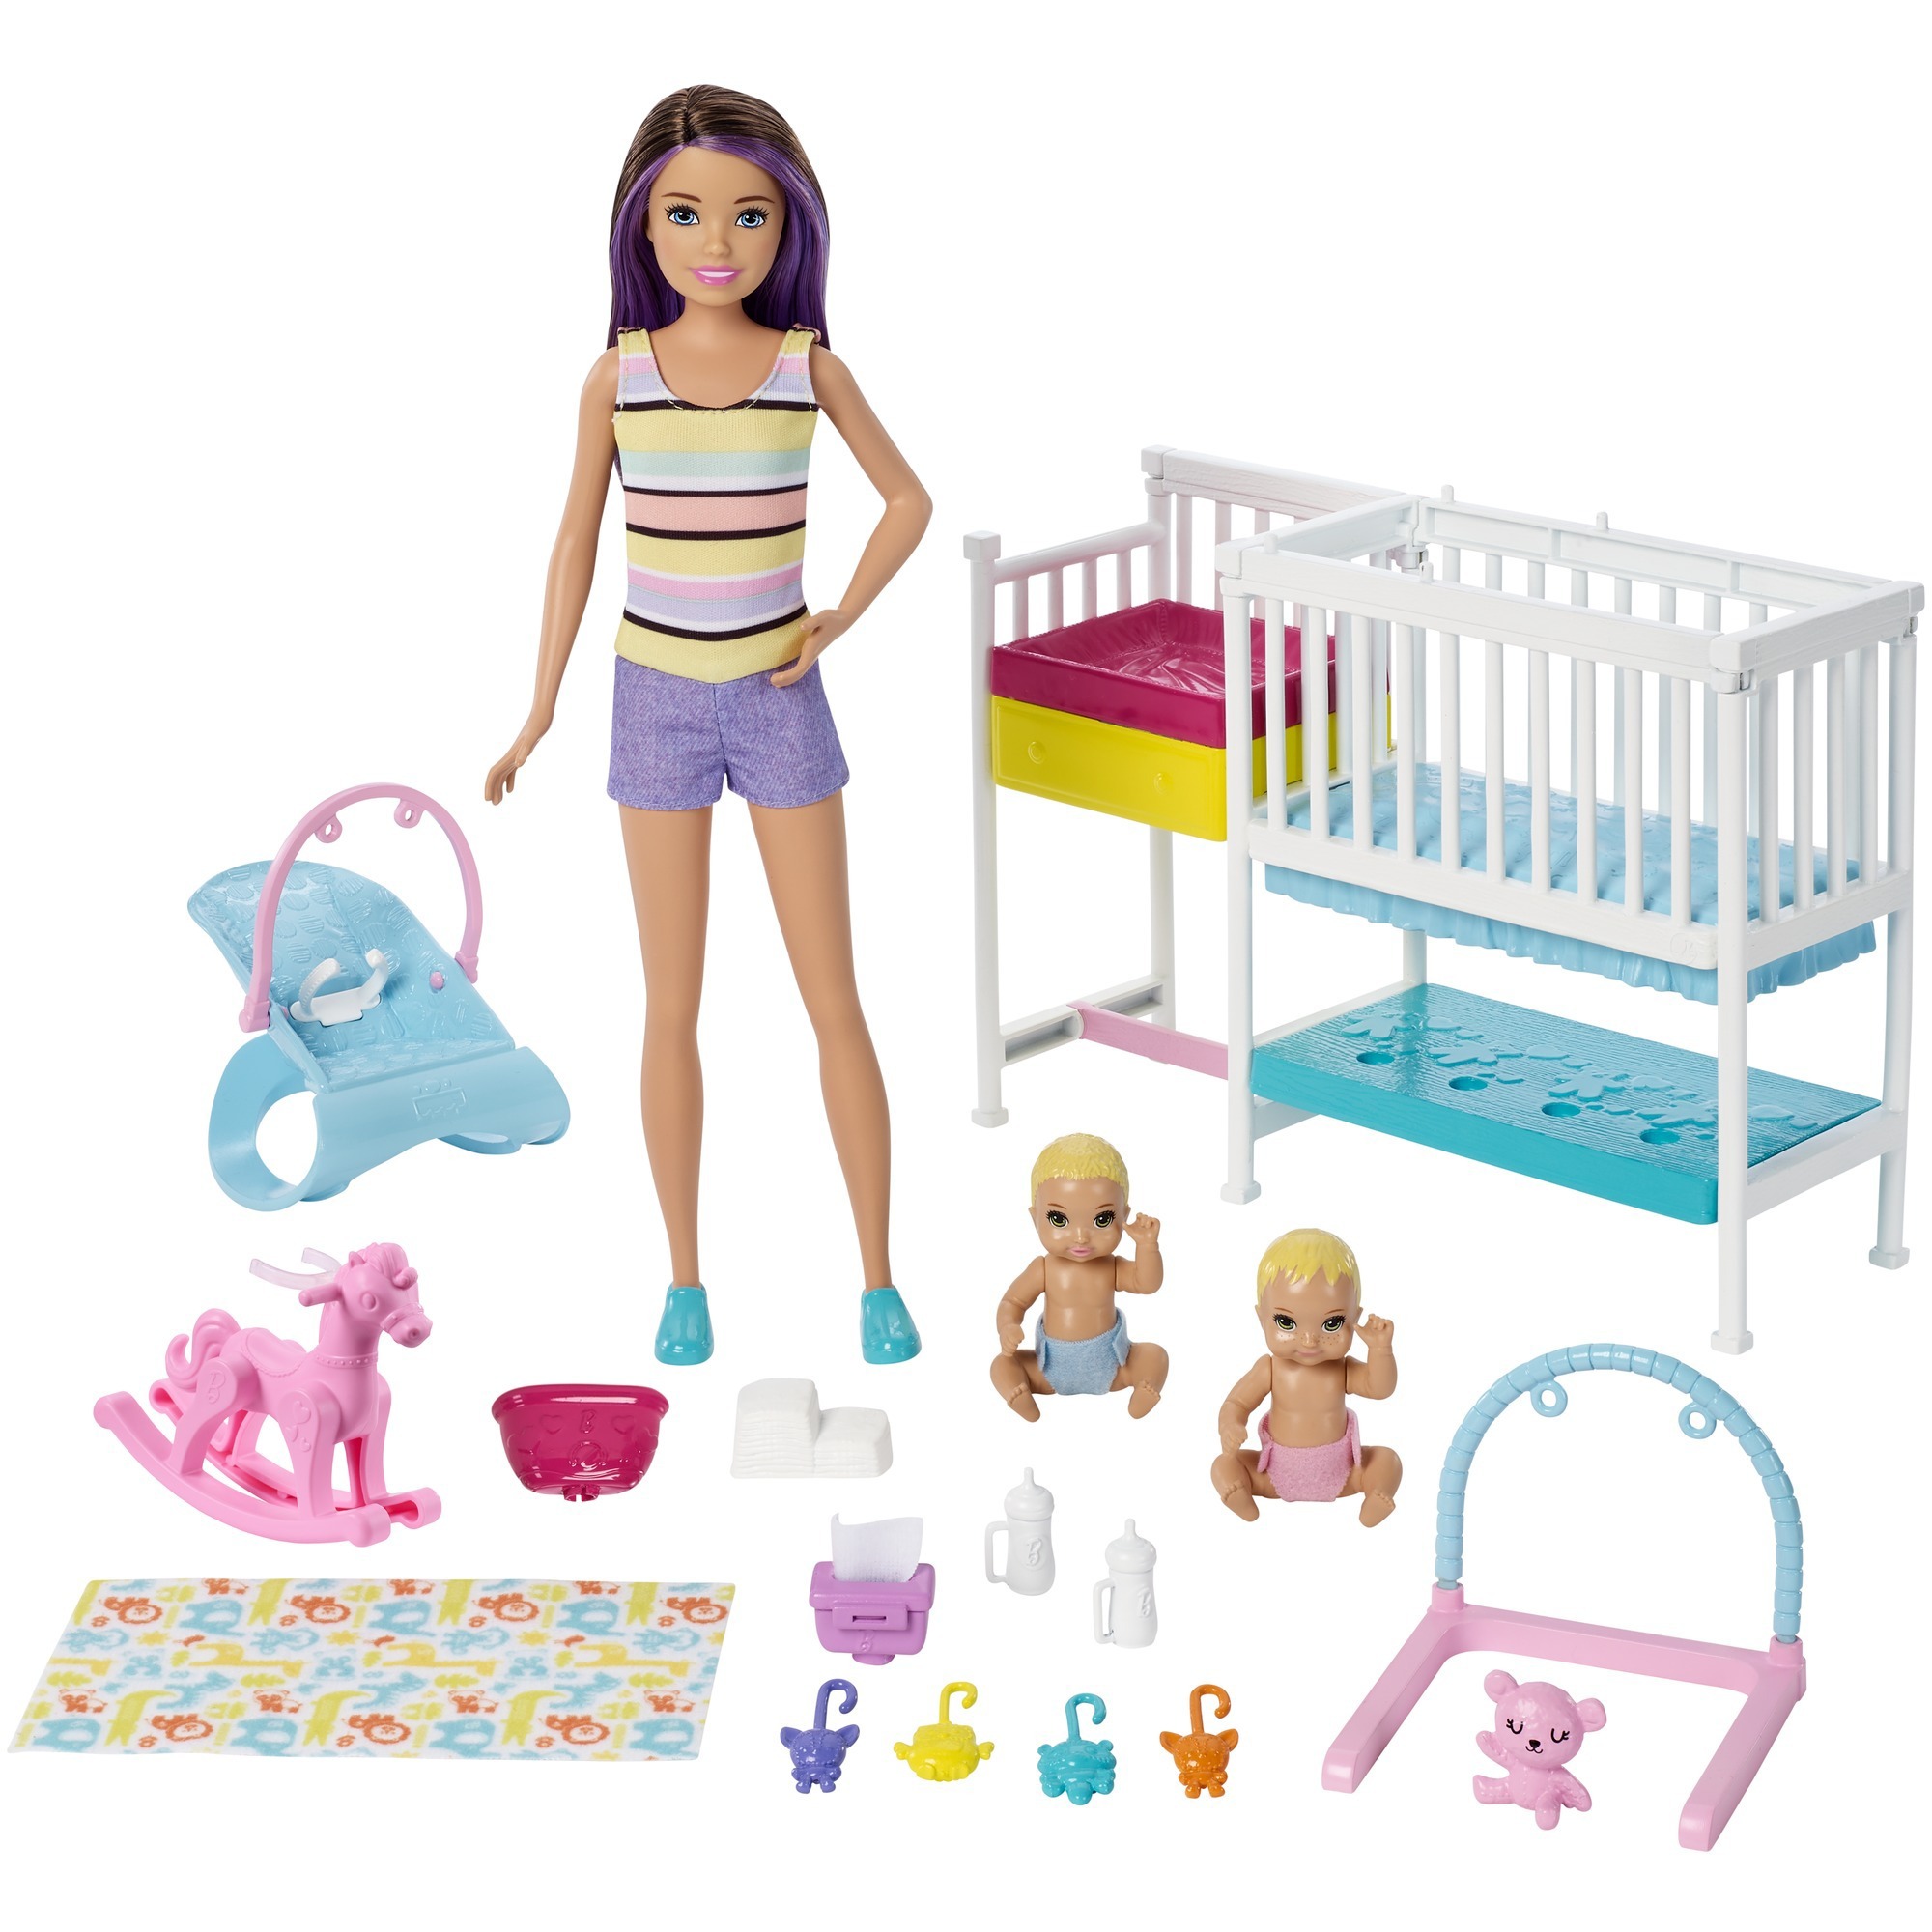 Image of Alternate - Barbie "Skipper Babysitters Inc." Kinderzimmer Spielset, Puppe online einkaufen bei Alternate